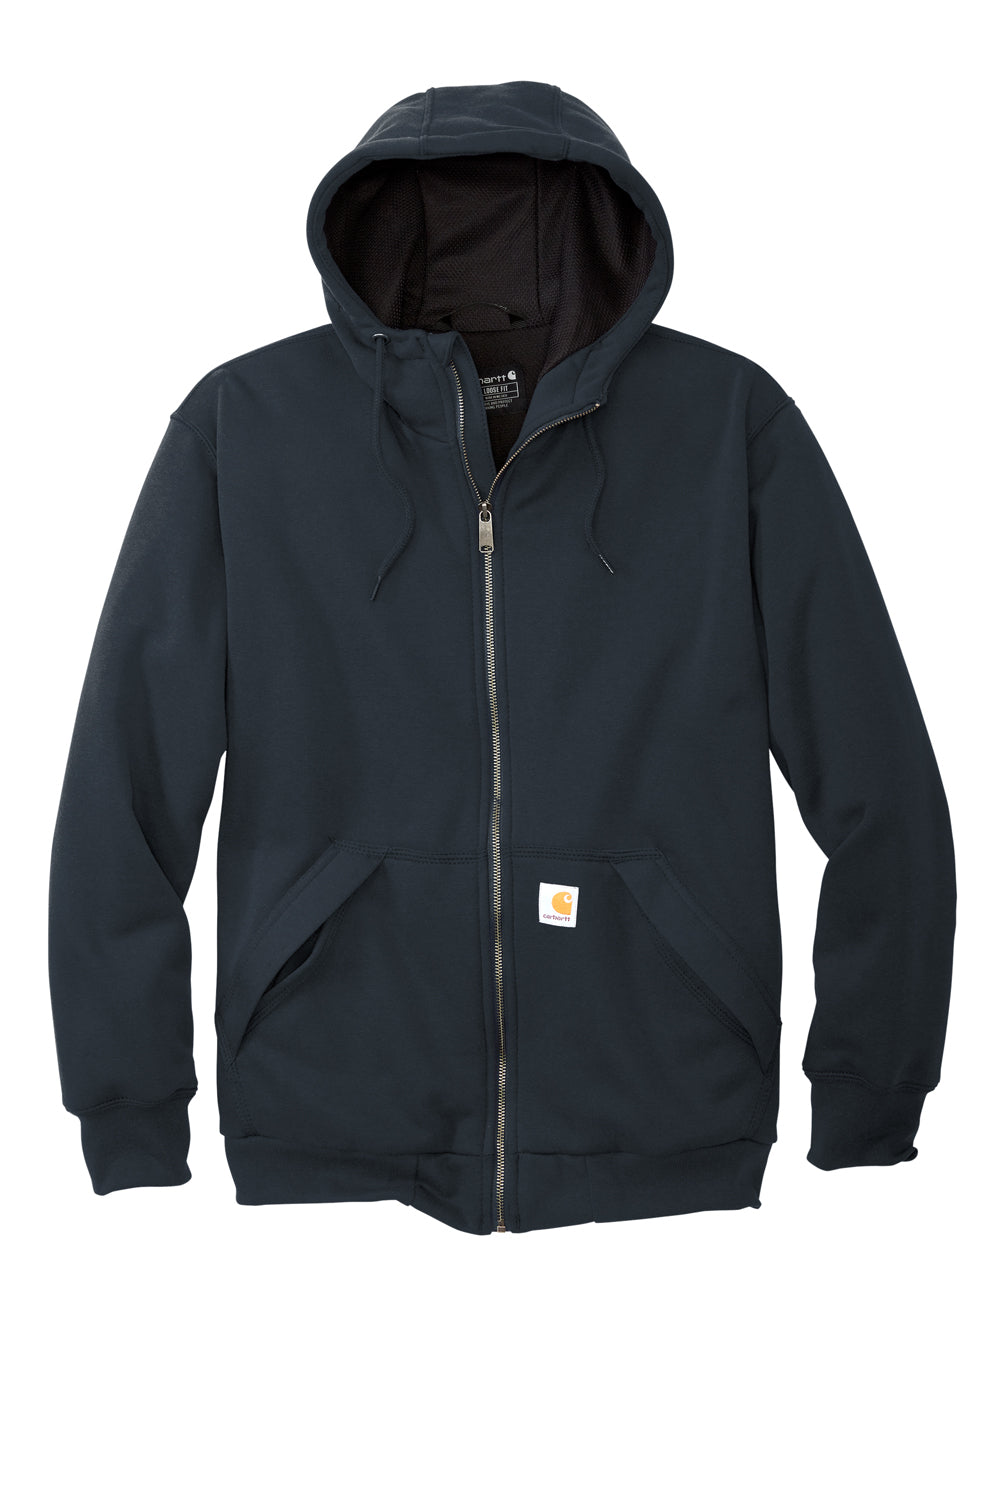 Carhartt CT104078 Mens Water Resistant Thermal Lined Full Zip Hooded Sweatshirt Hoodie New Navy Blue Flat Front